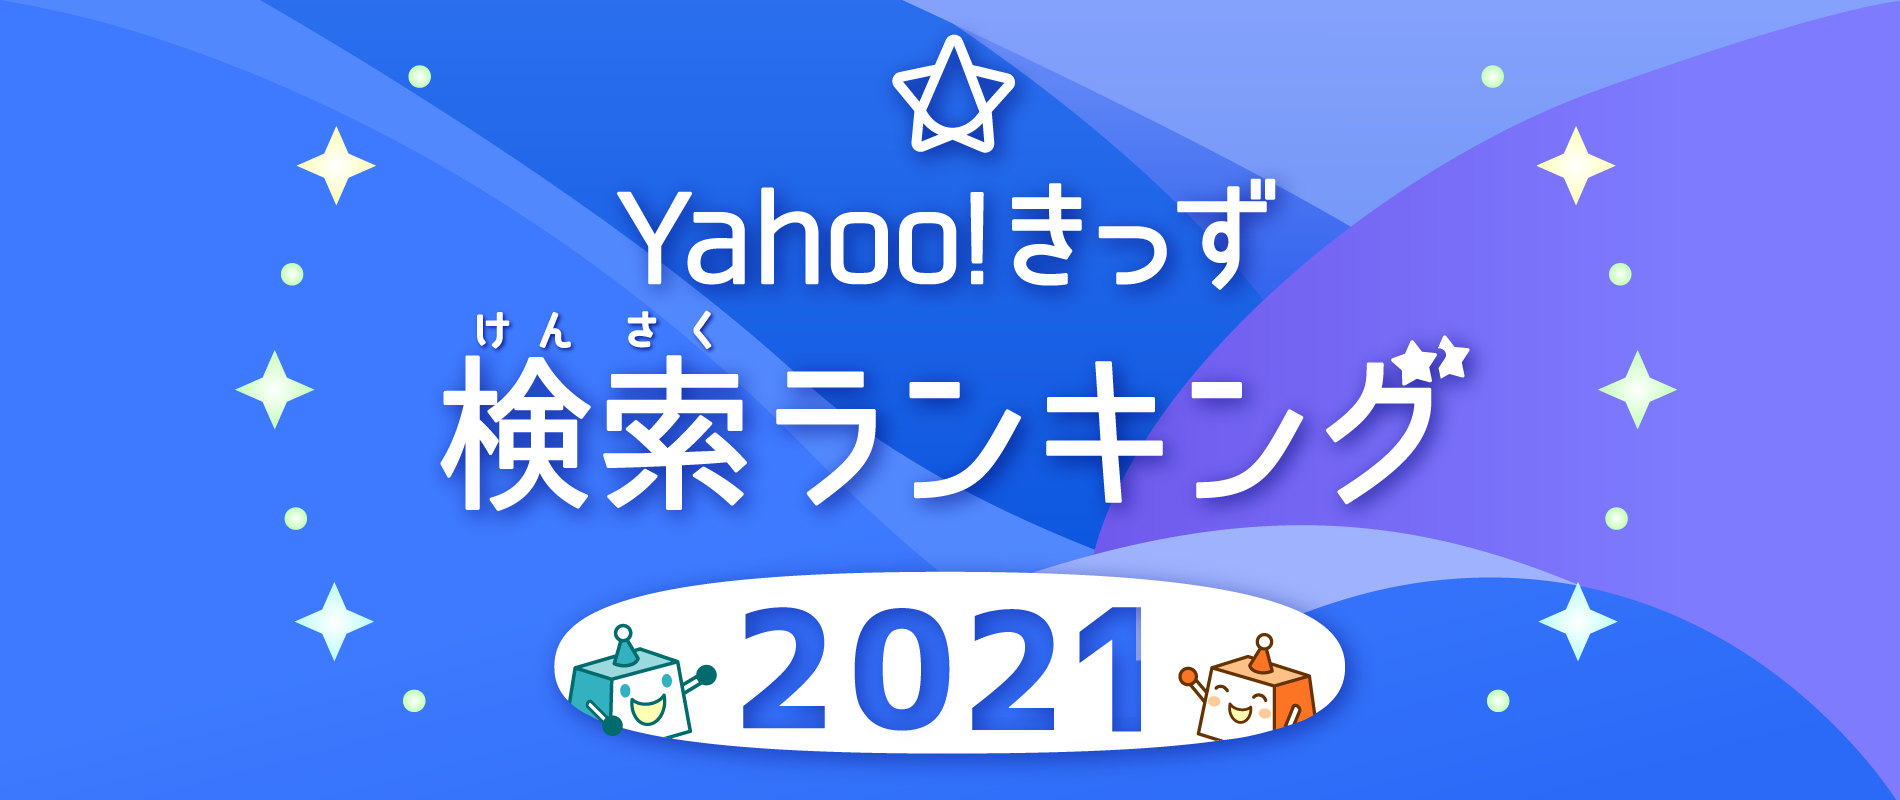 Yahoo!きっず 検索ランキング2021